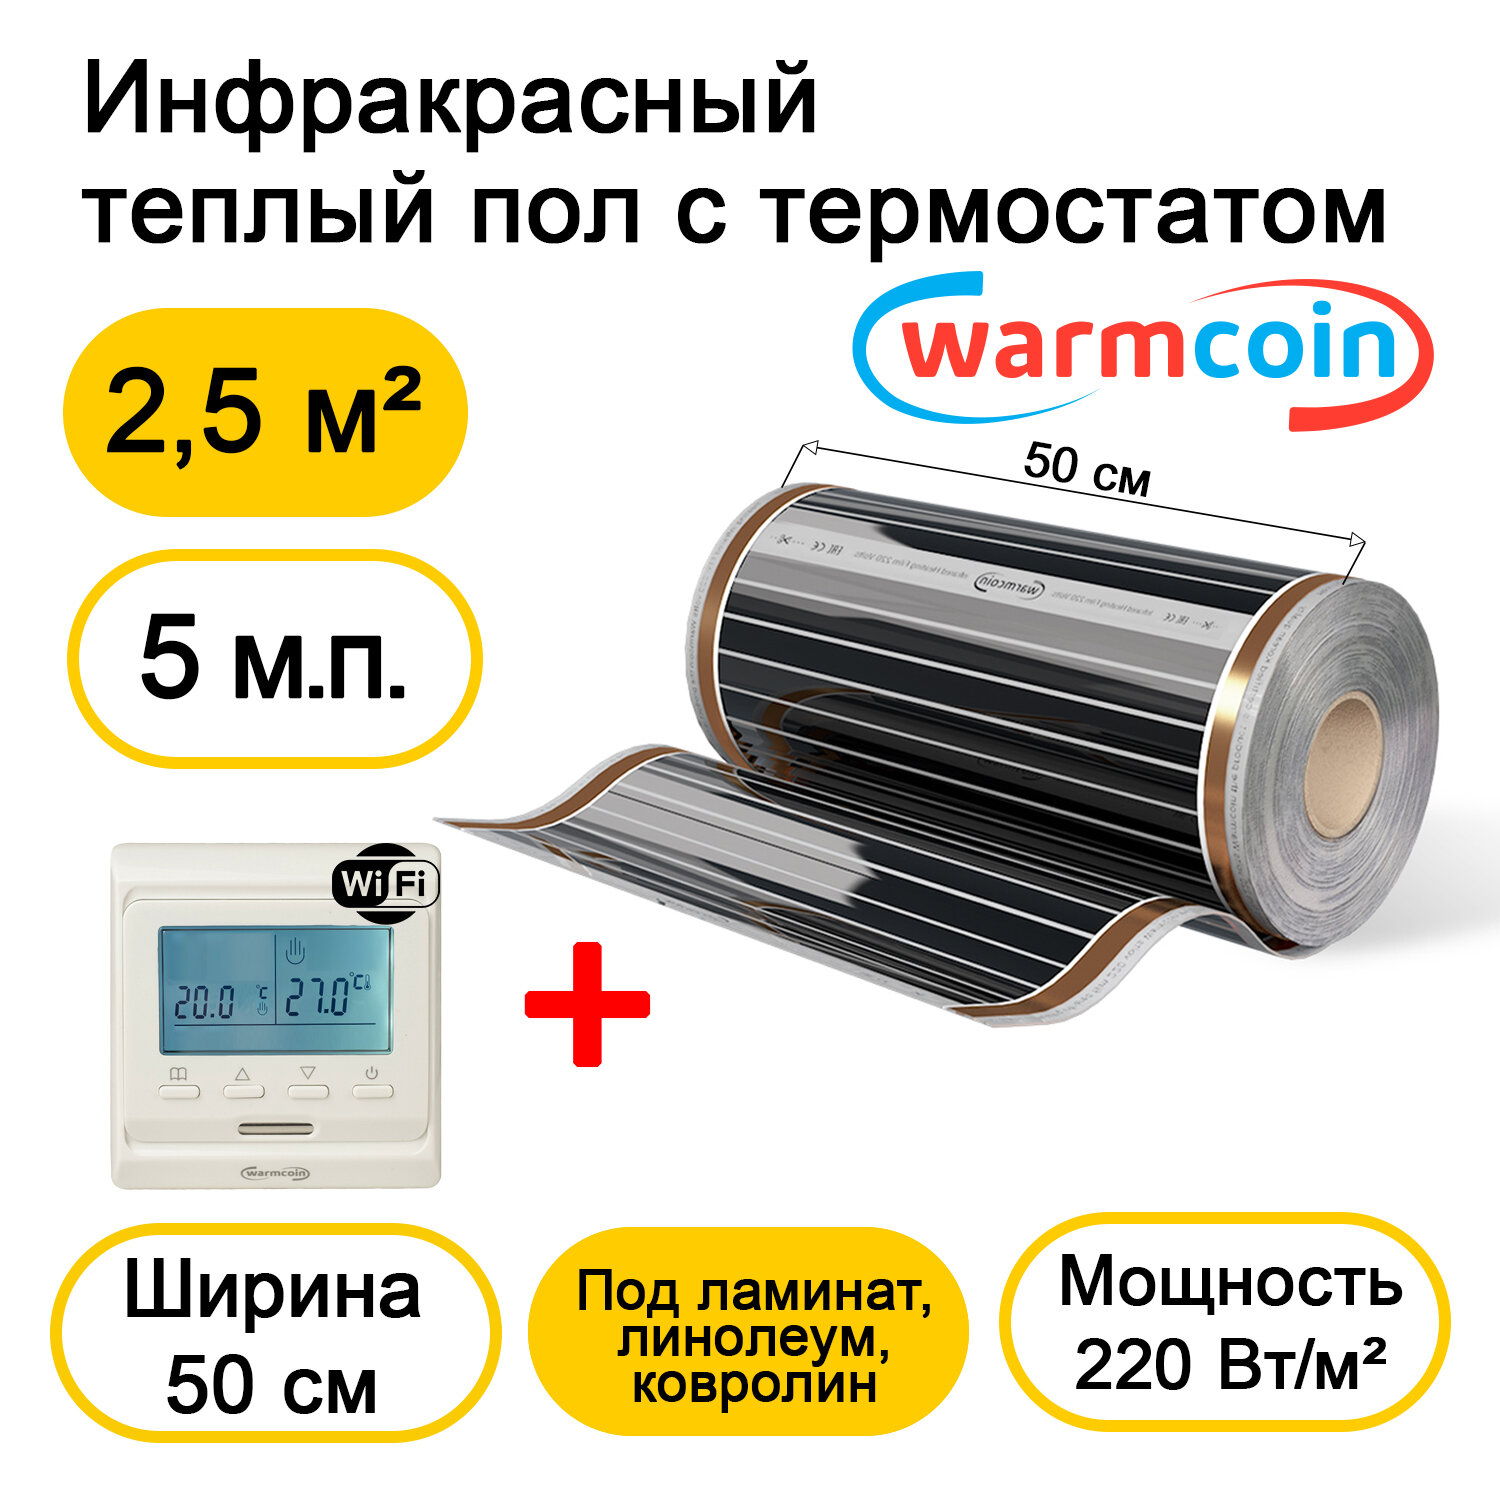 Теплый пол Warmcoin инфракрасный 50 см, 220 Вт/м. кв. с терморегулятором Wi-Fi, 5м. п.